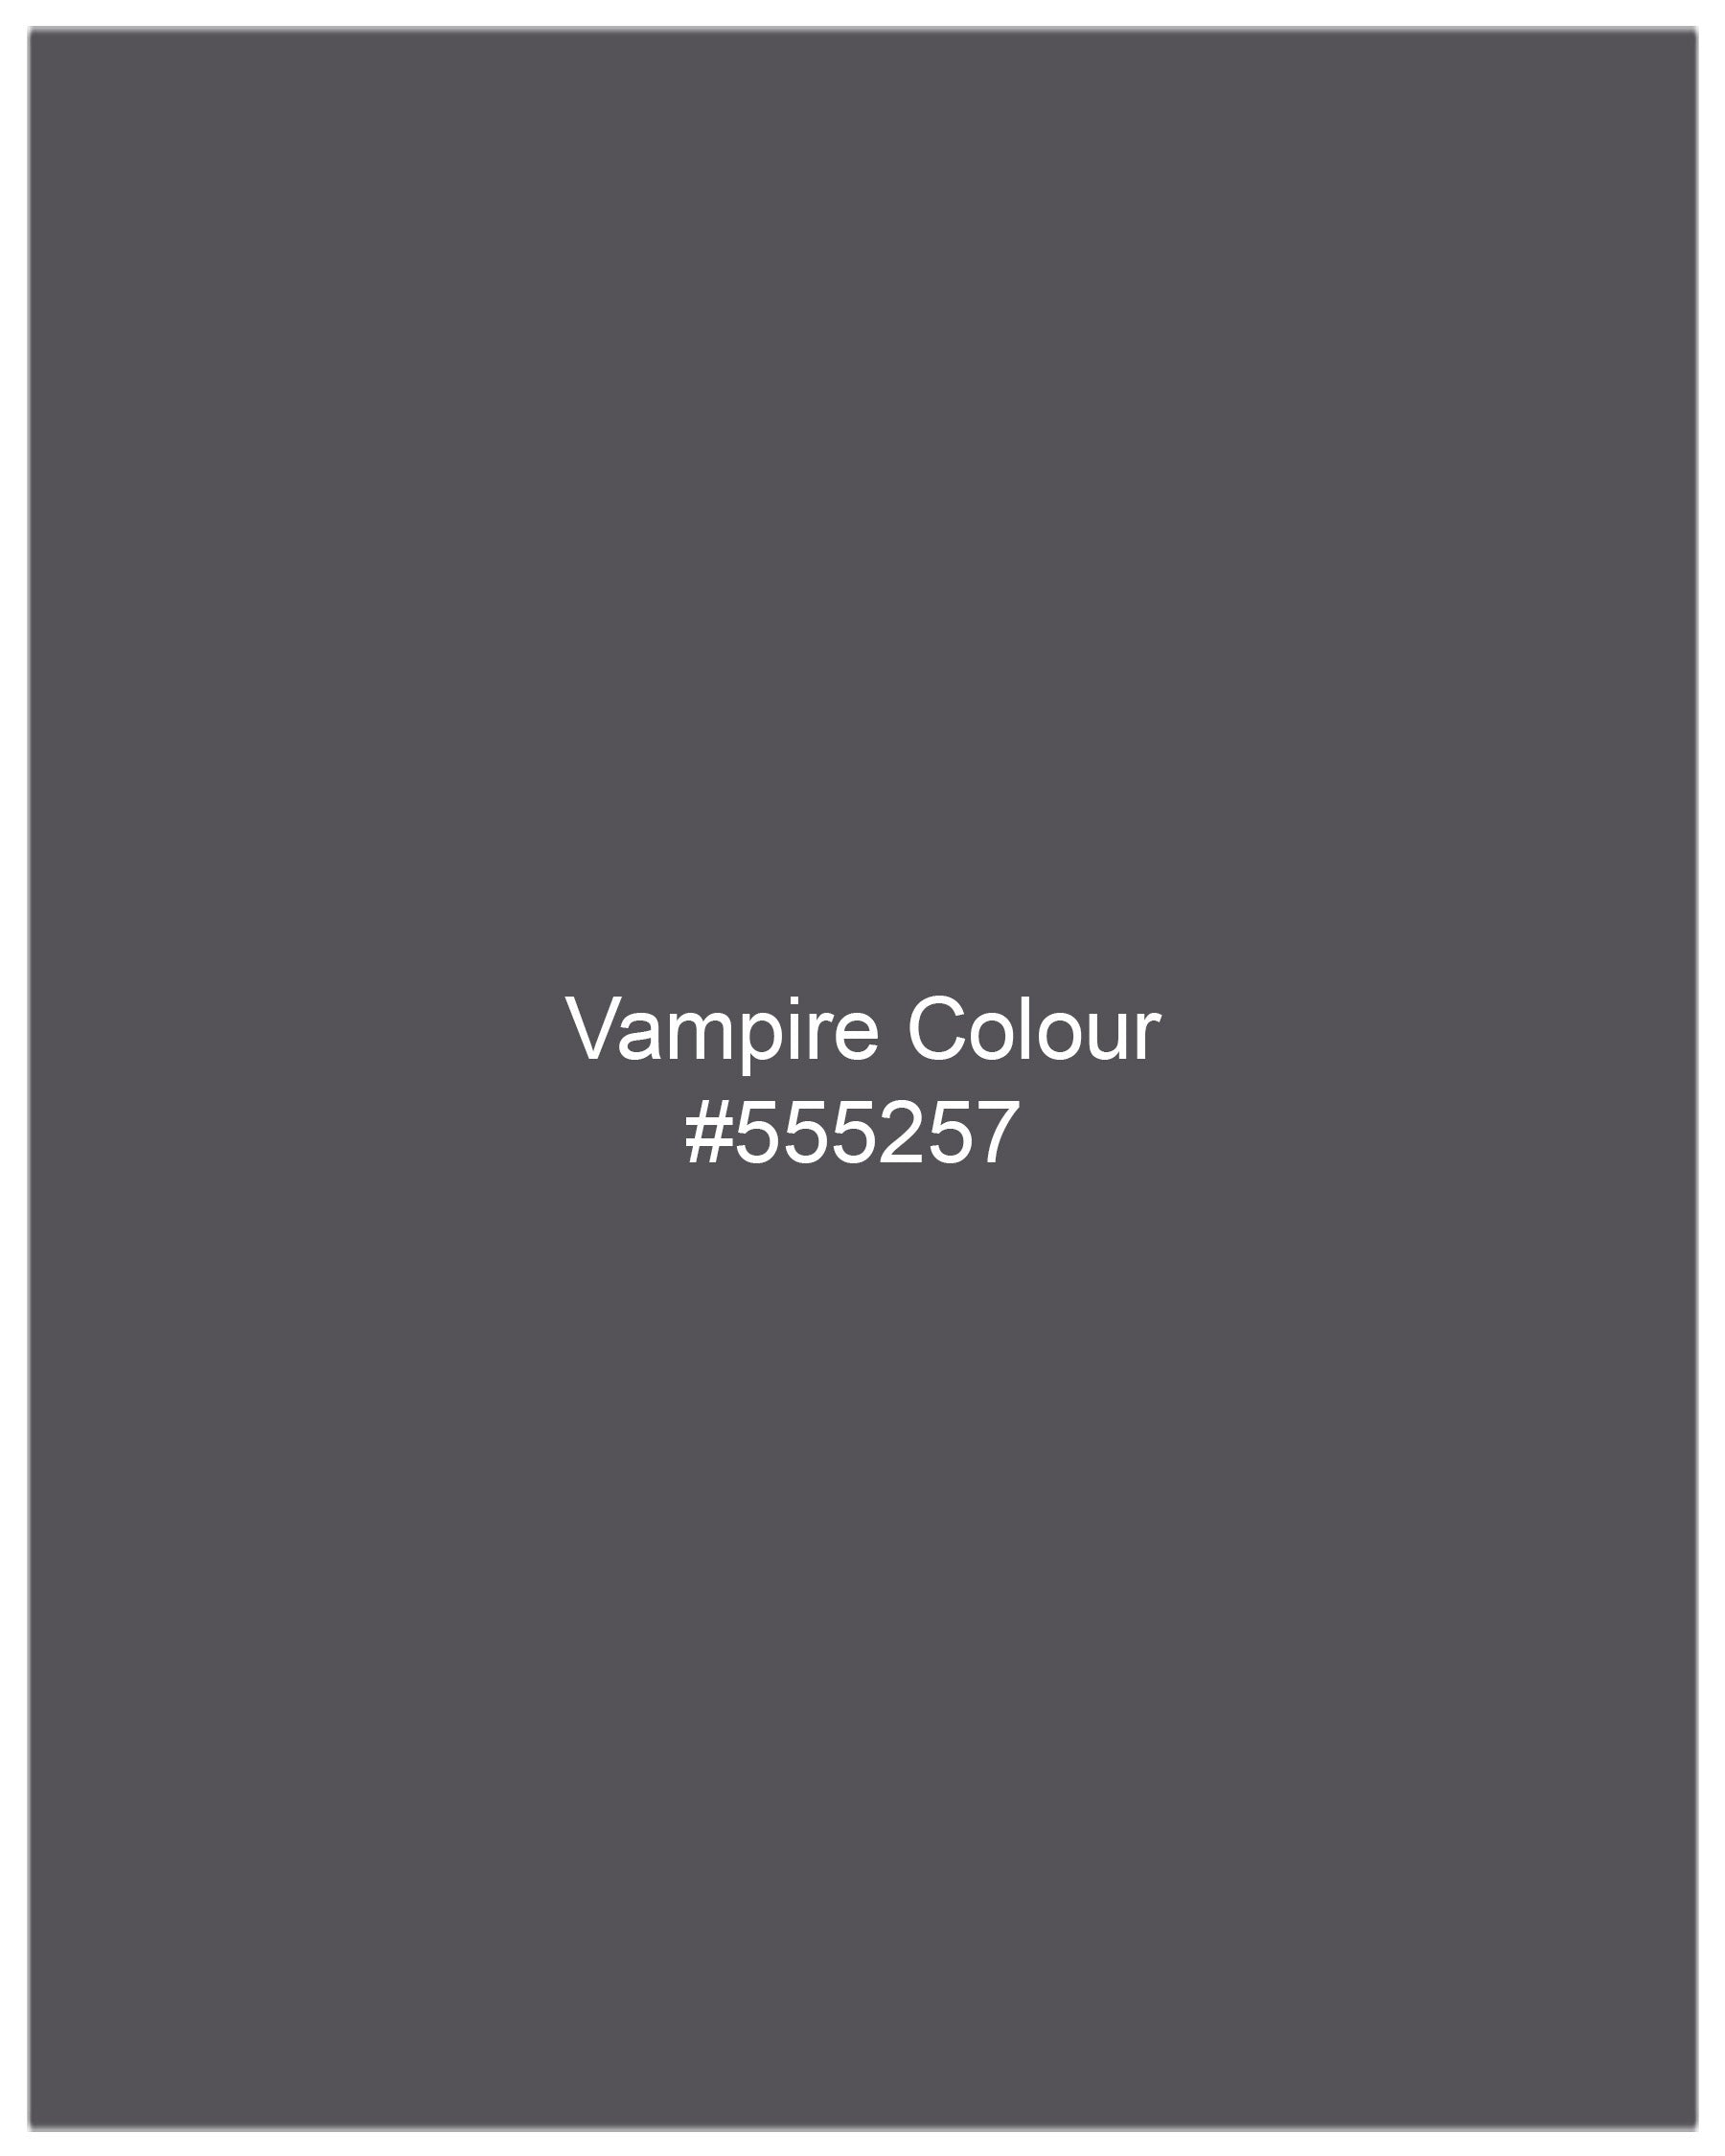 Vampire Light Gray Waistcoat V2001-36, V2001-38, V2001-40, V2001-42, V2001-44, V2001-46, V2001-48, V2001-50, V2001-52, V2001-54, V2001-56, V2001-58, V2001-60